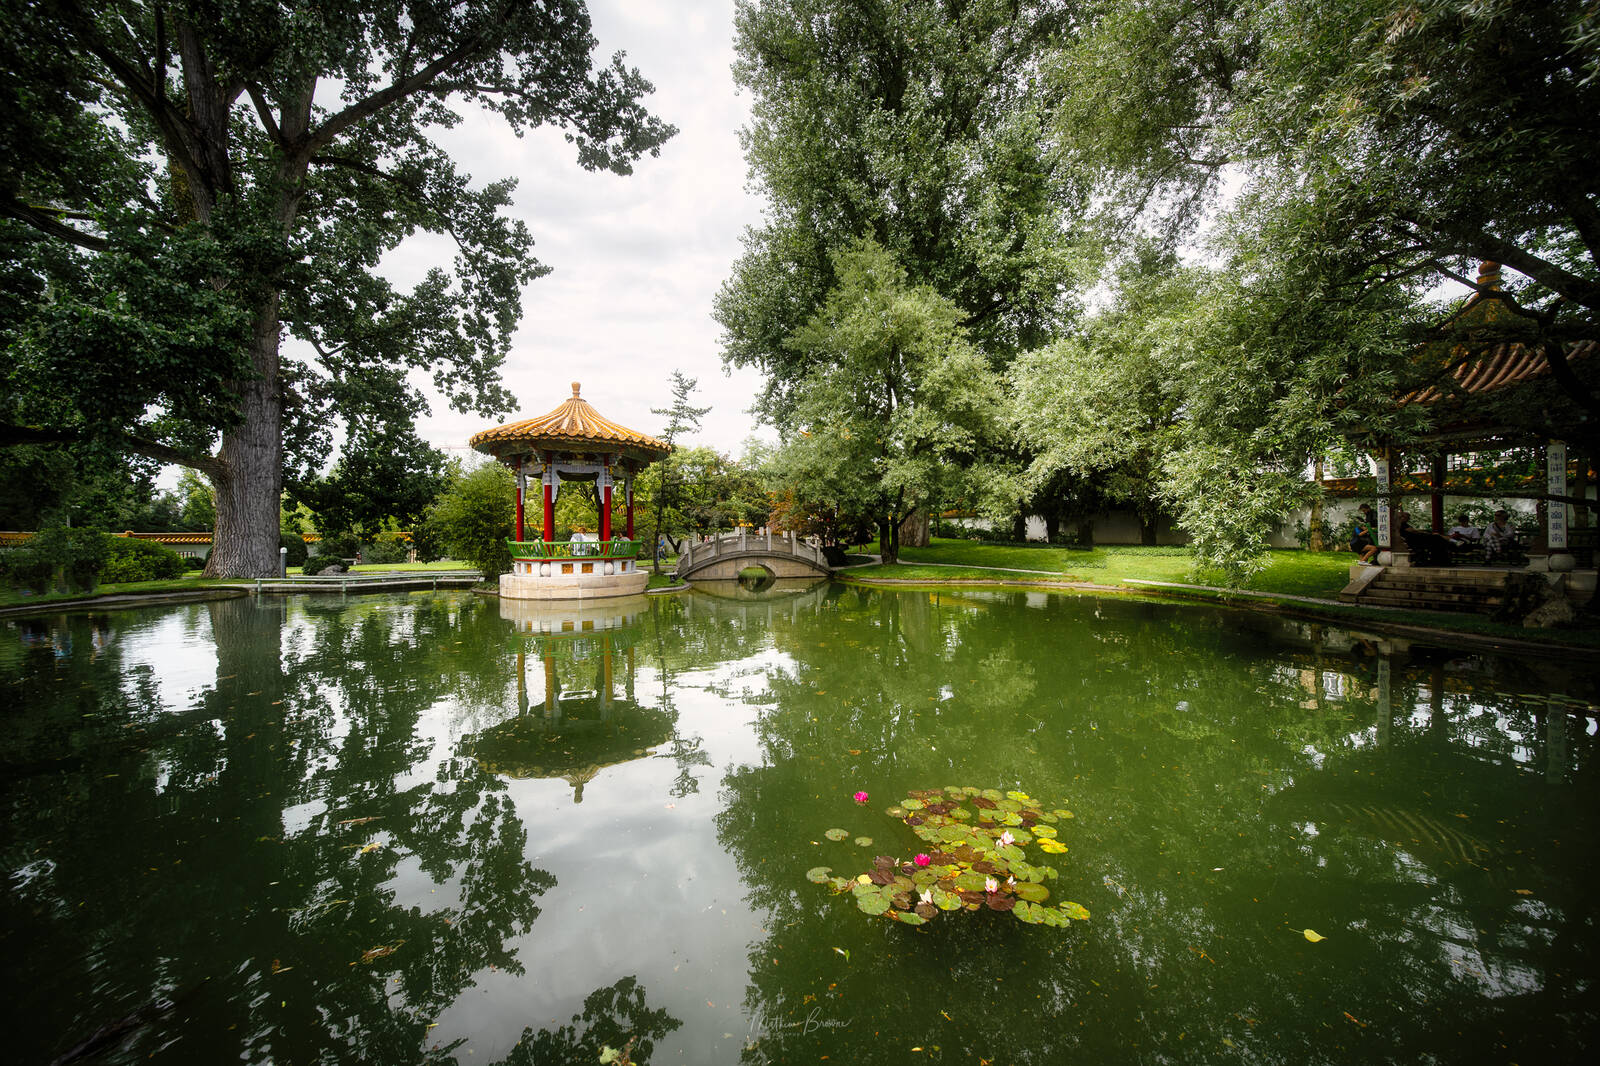 Image of Zurich Chinagarten by Mathew Browne